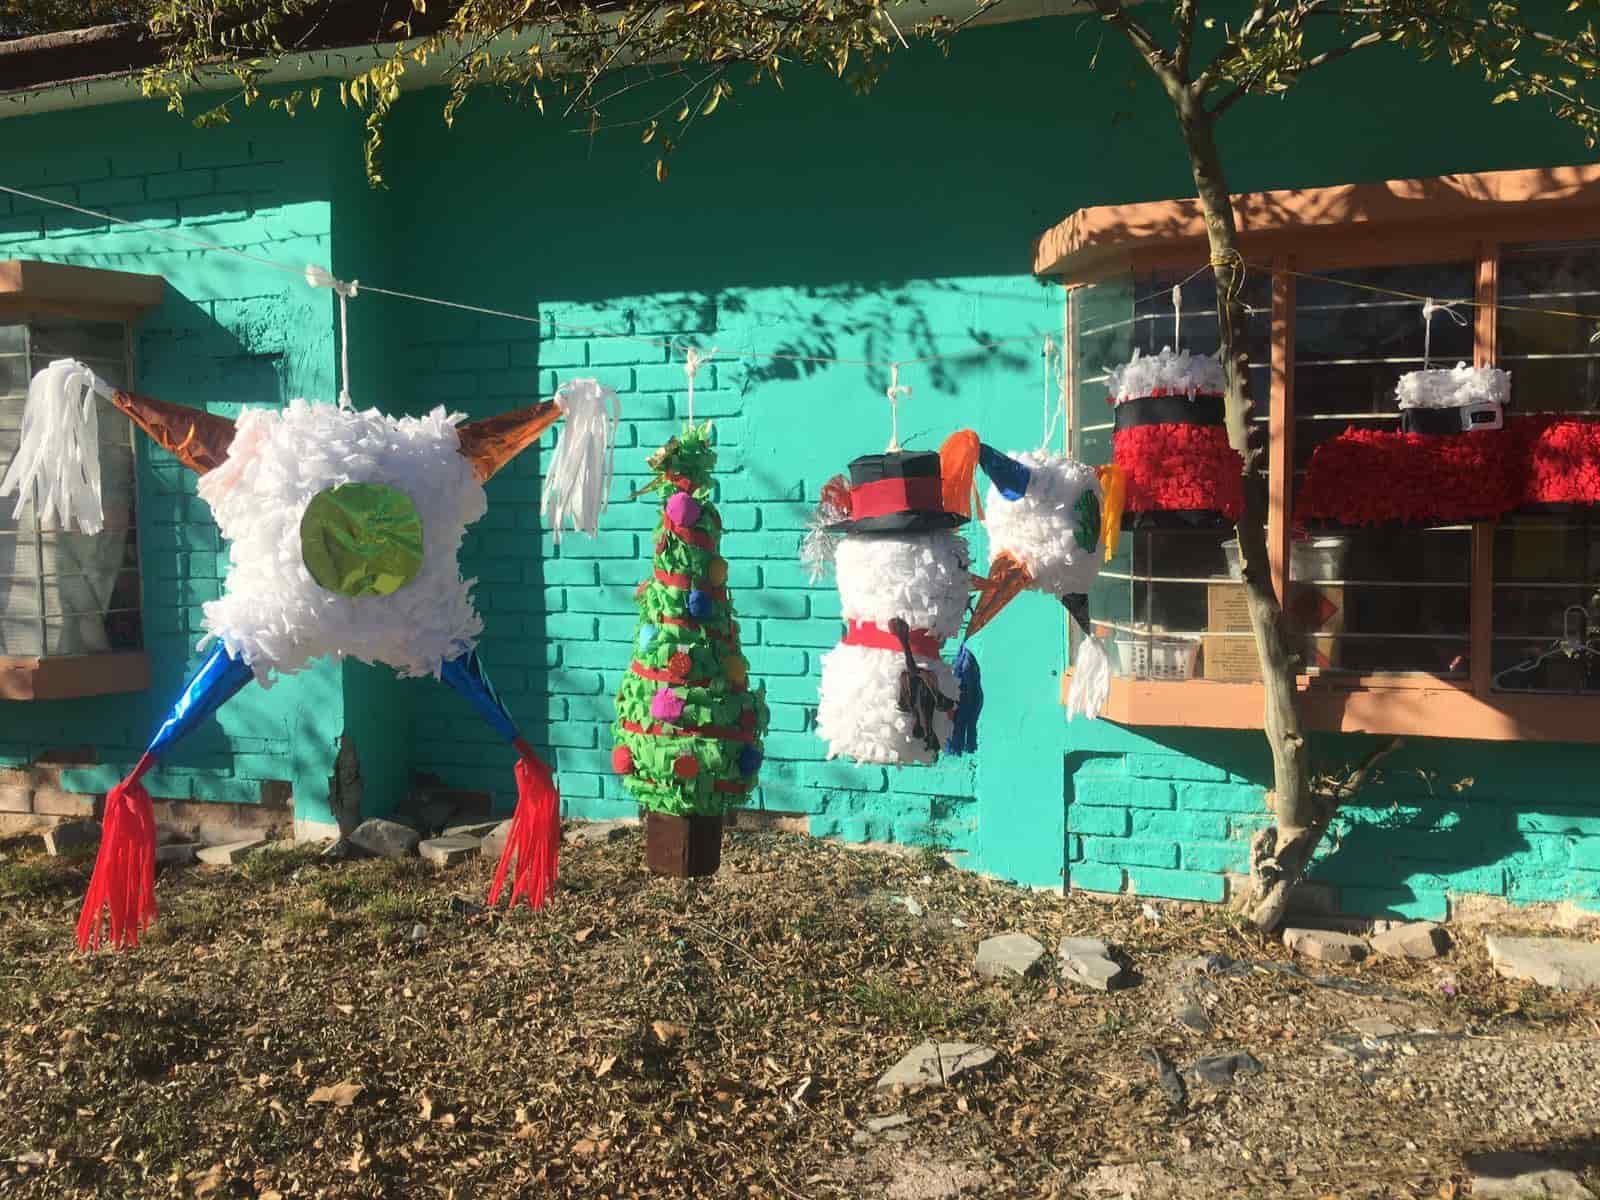 Emprenden con espíritu navideño fabrican y venden piñatas aprovechando la fecha